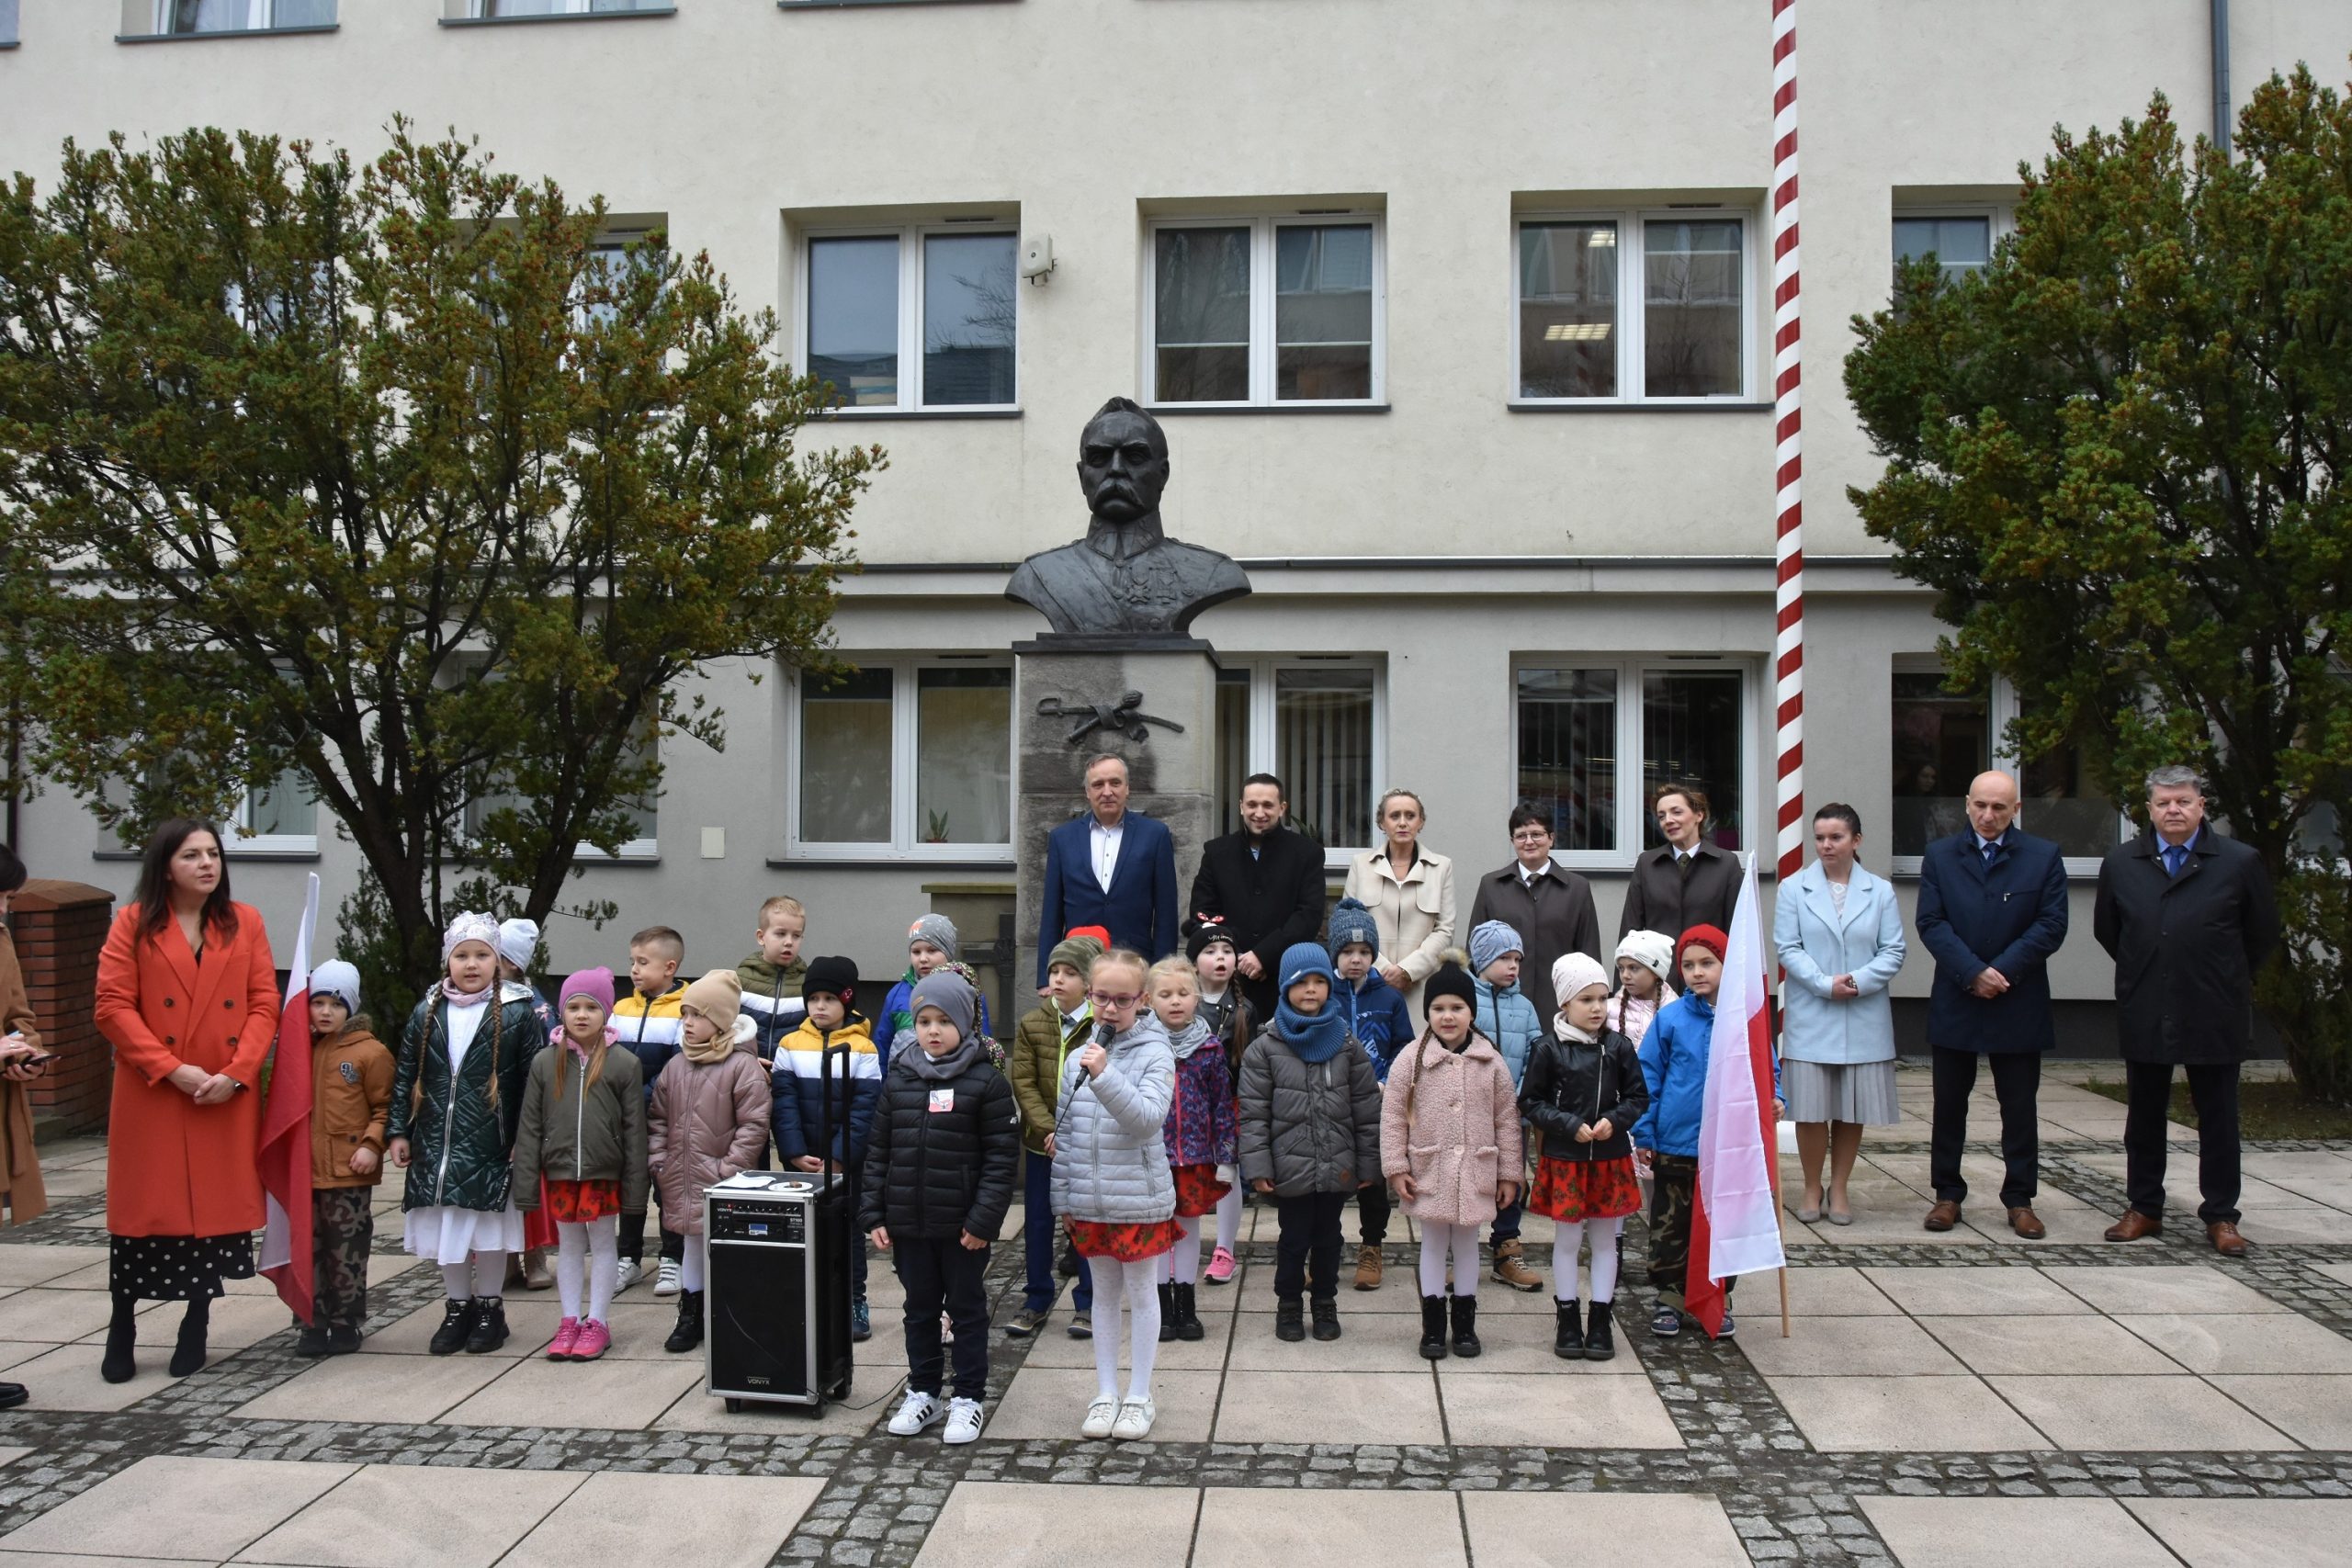 Grupa kilkudziesięciu osób (dzieci oraz kobiet i mężczyzn) stoją na kostce brukowej szarej przed jasnym budynkiem. Za nimi pomnik przedstawiające półpiersie Józefa Piłsdudskiego.